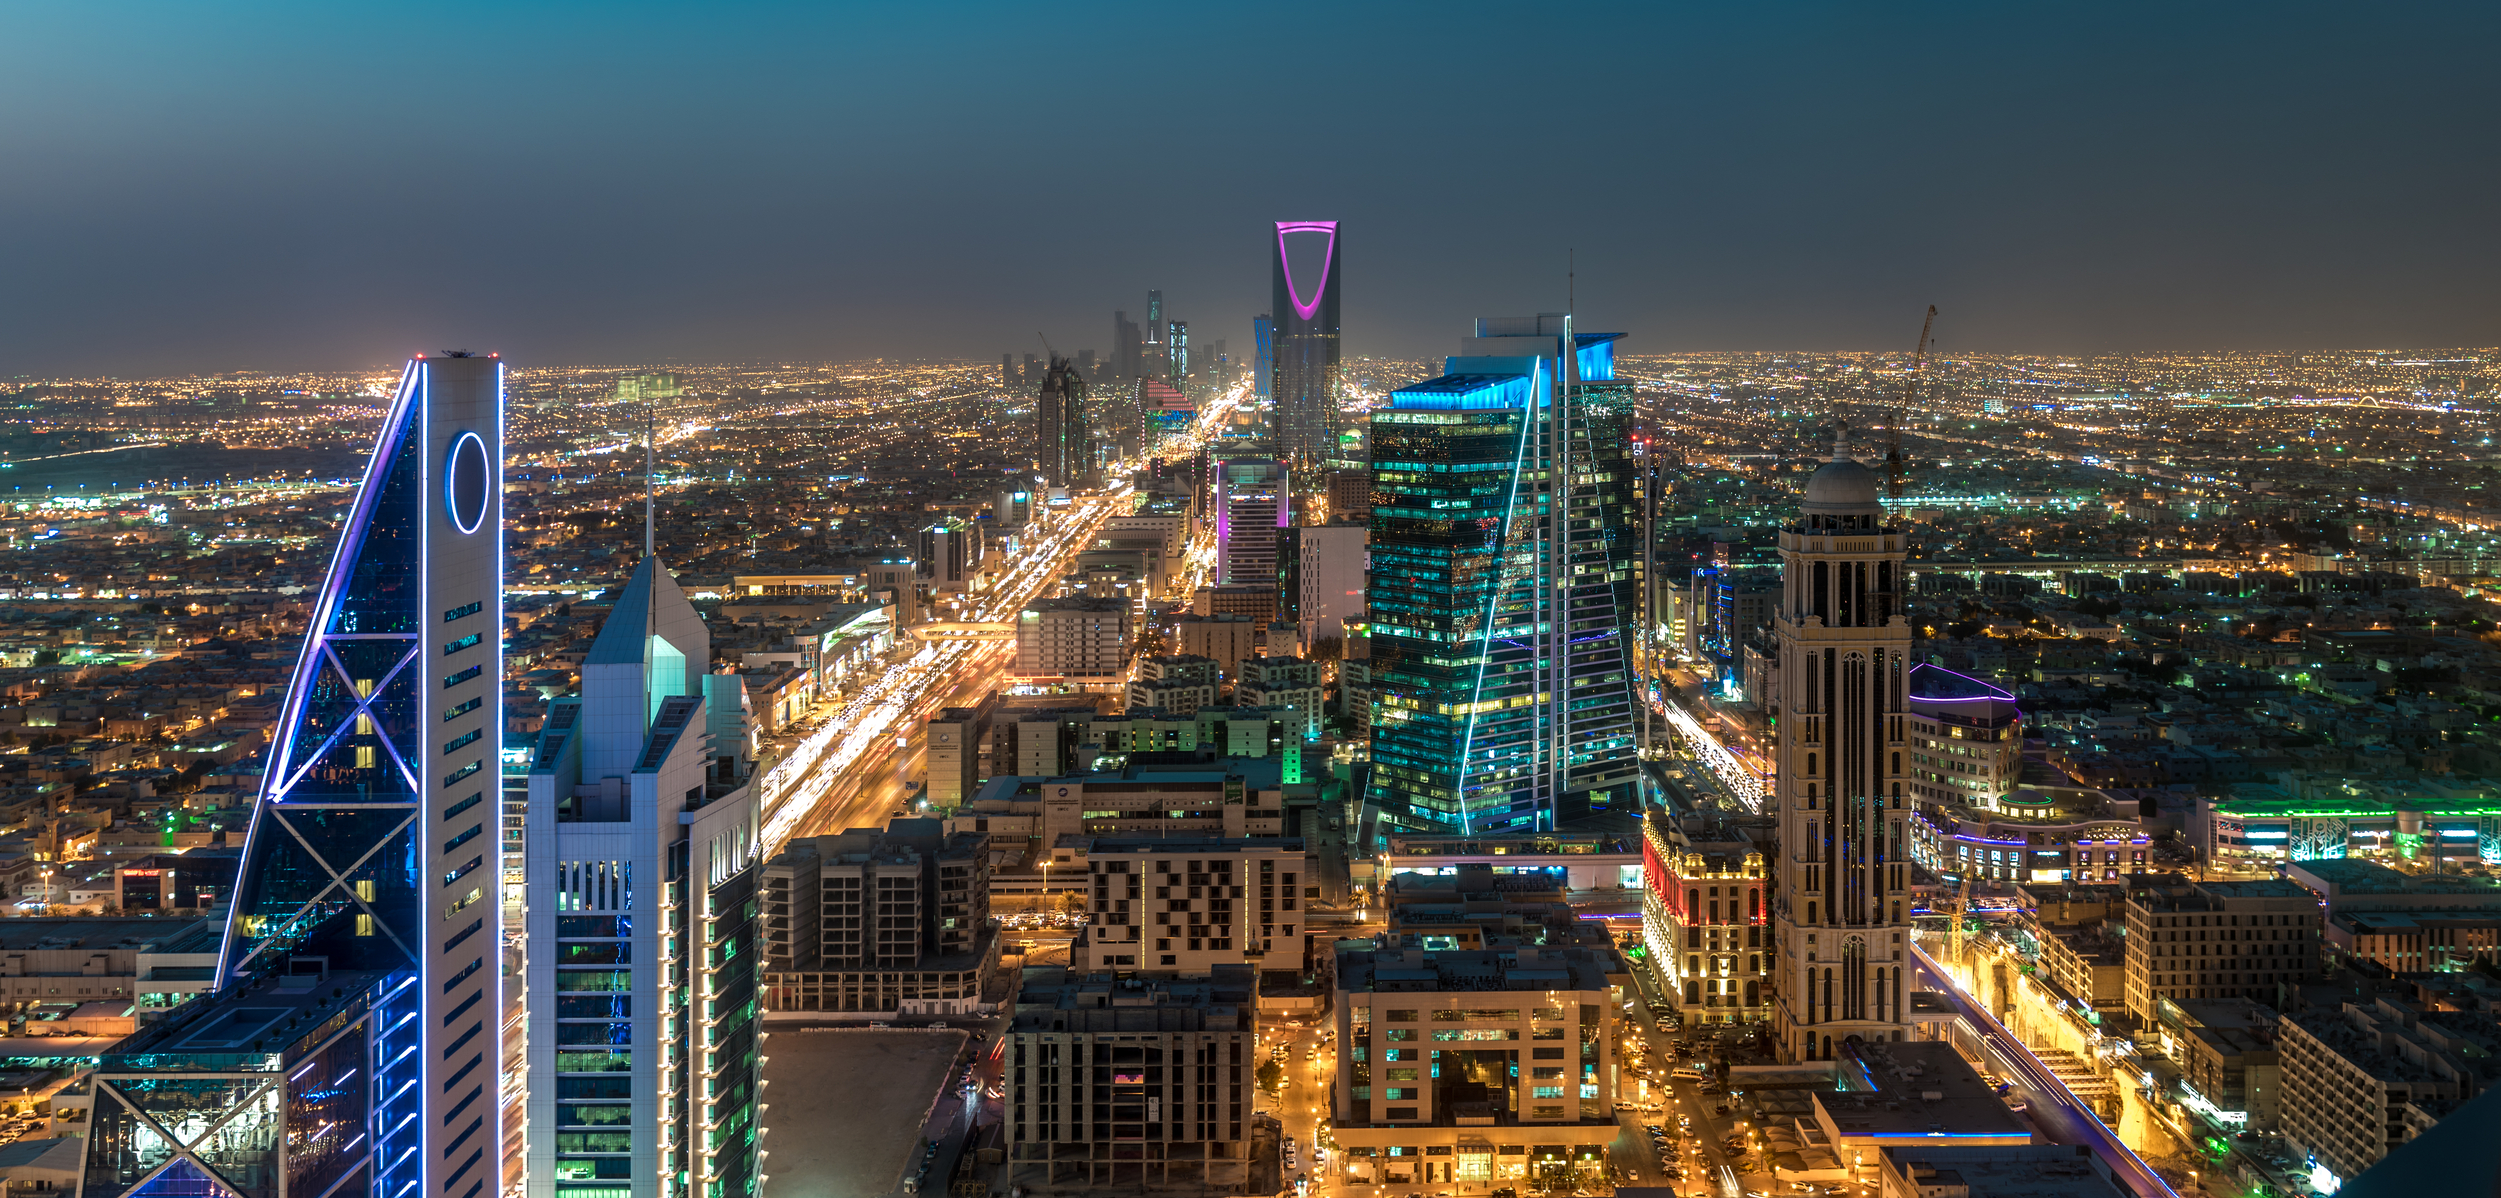 Arabia Saudită, Riad, sursă foto dreamstime